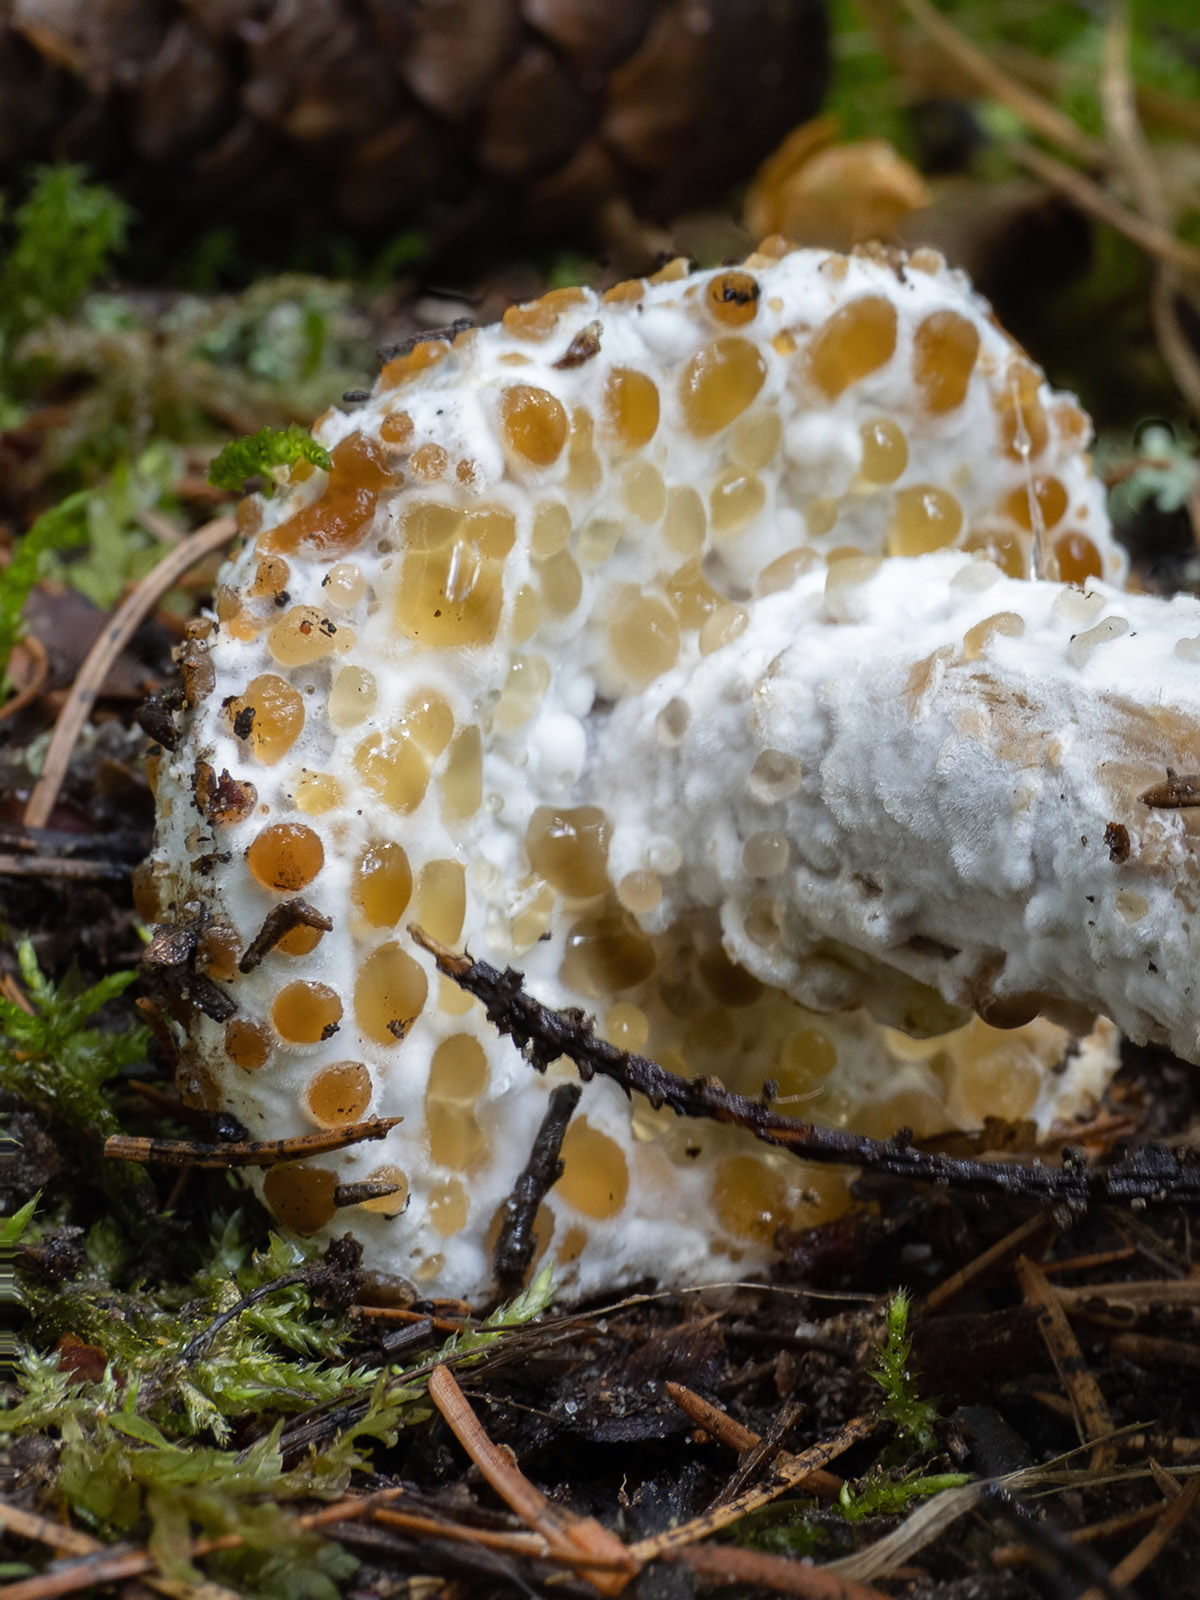 Гипомицес золотистоспоровый (Hypomyces chrysospermus), природный парк G?rv?ln, июль 2020 года. Автор фото: Сутормина Марина